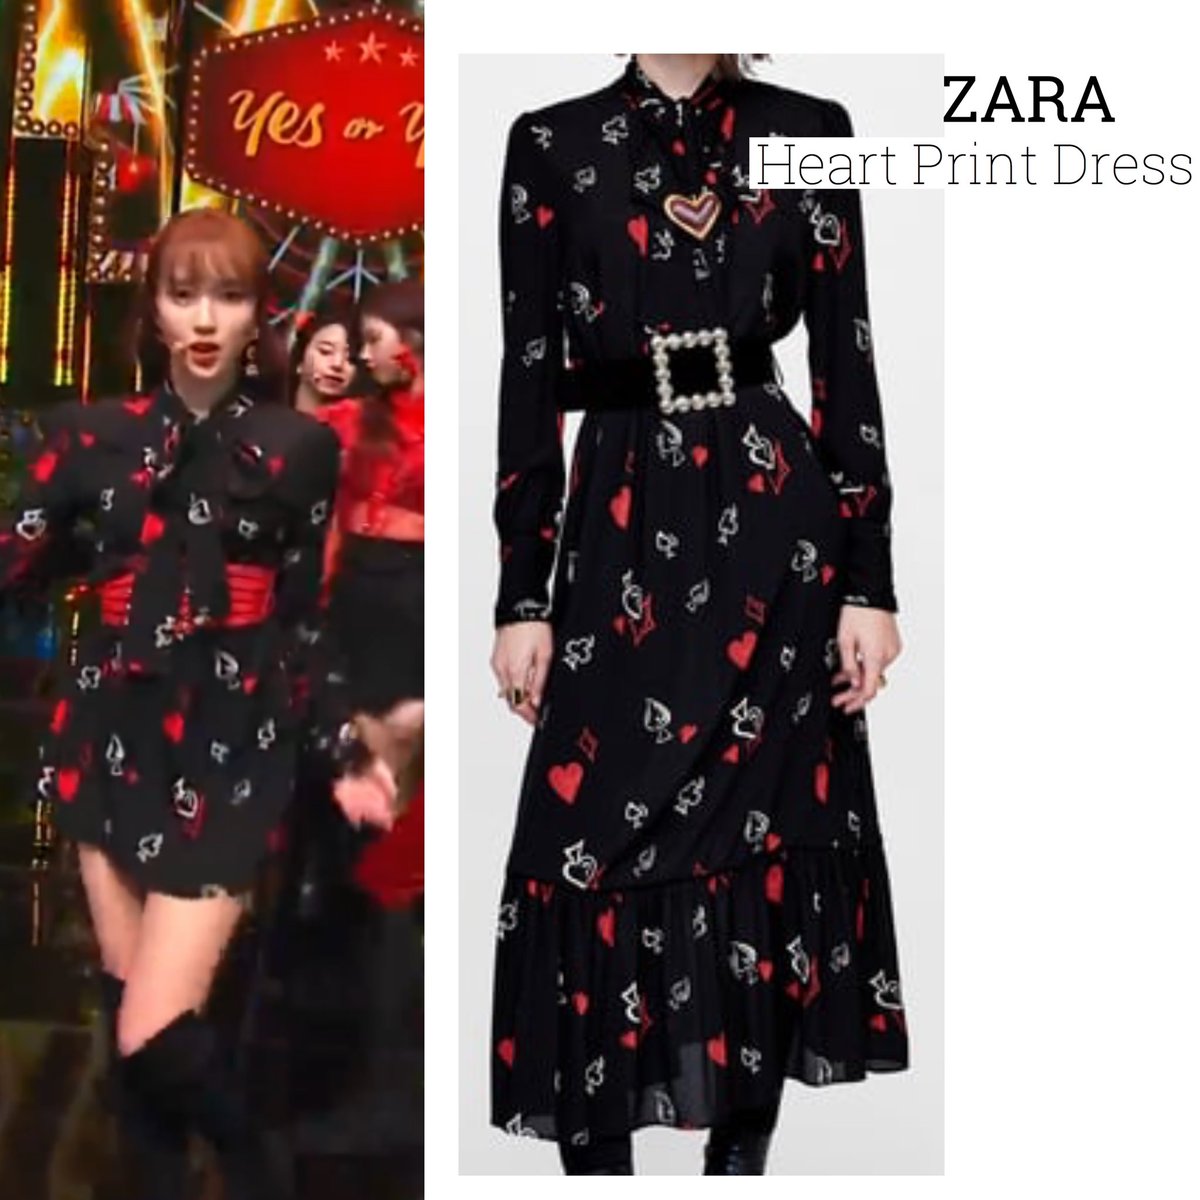 zara heart print dress